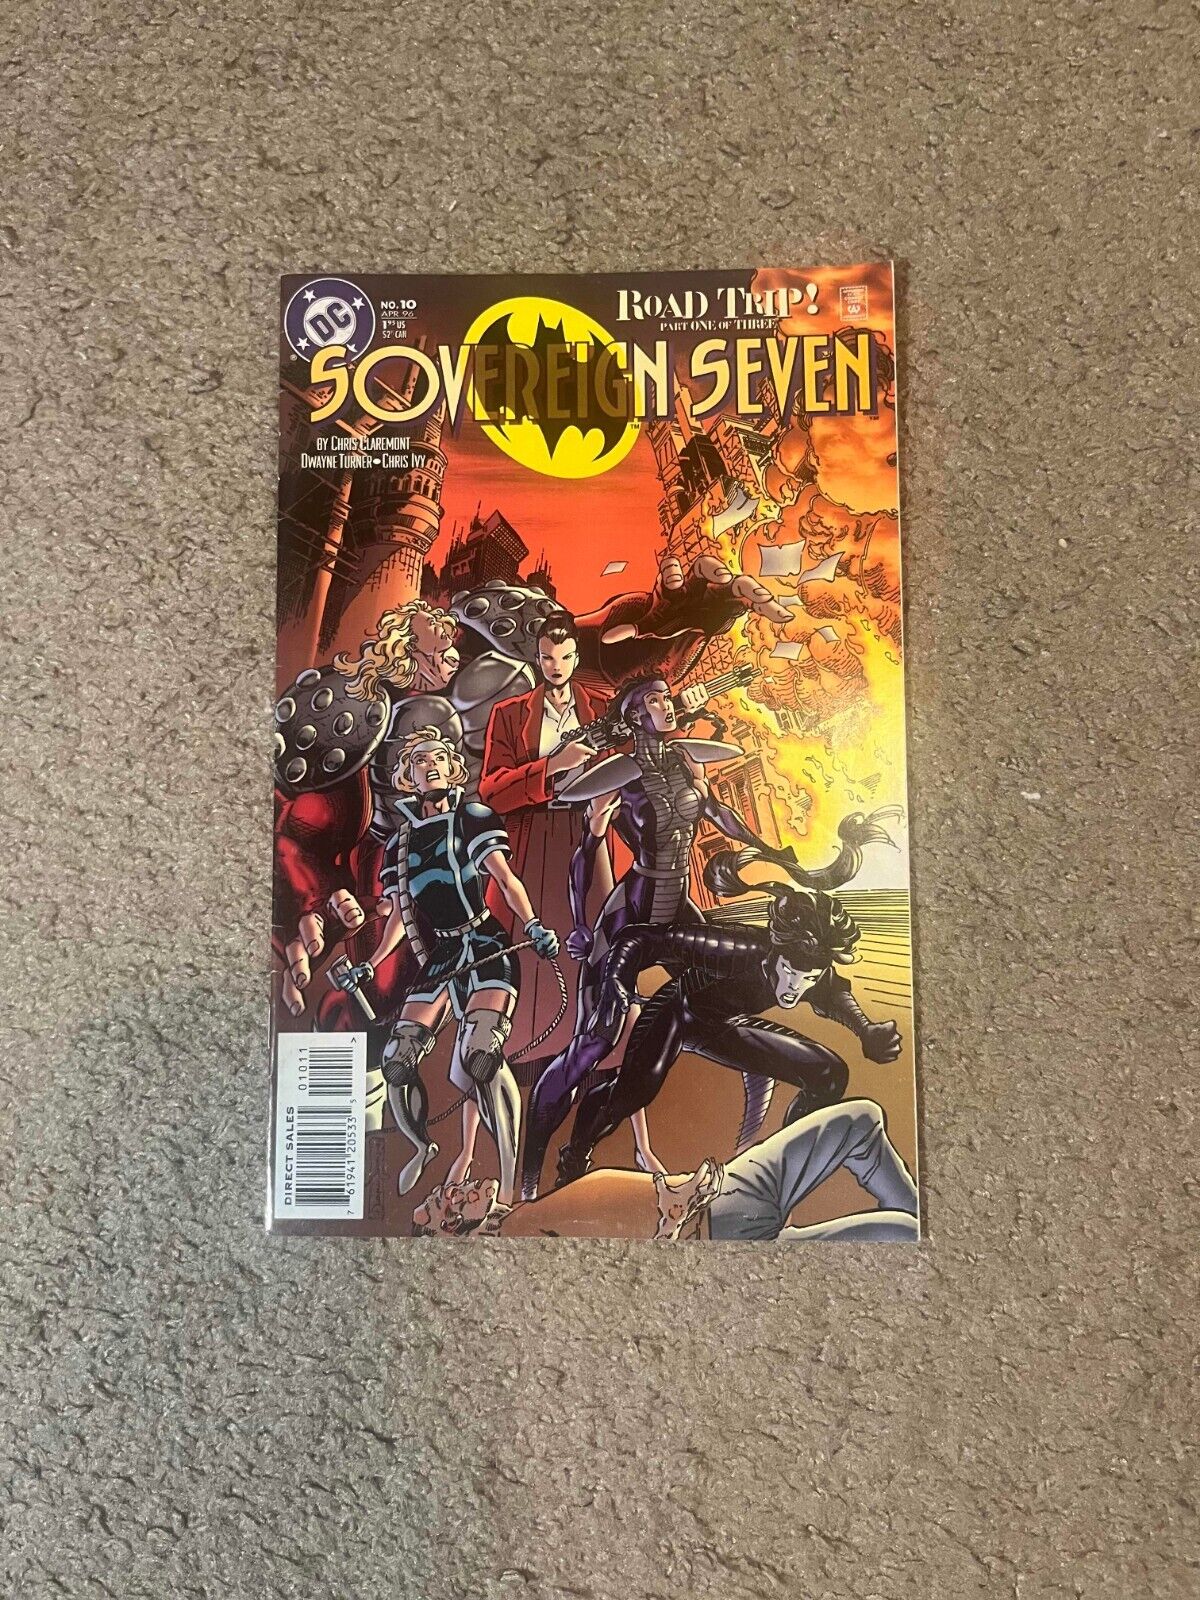 Sovereign Seven #10 (DC Comics April 1996)